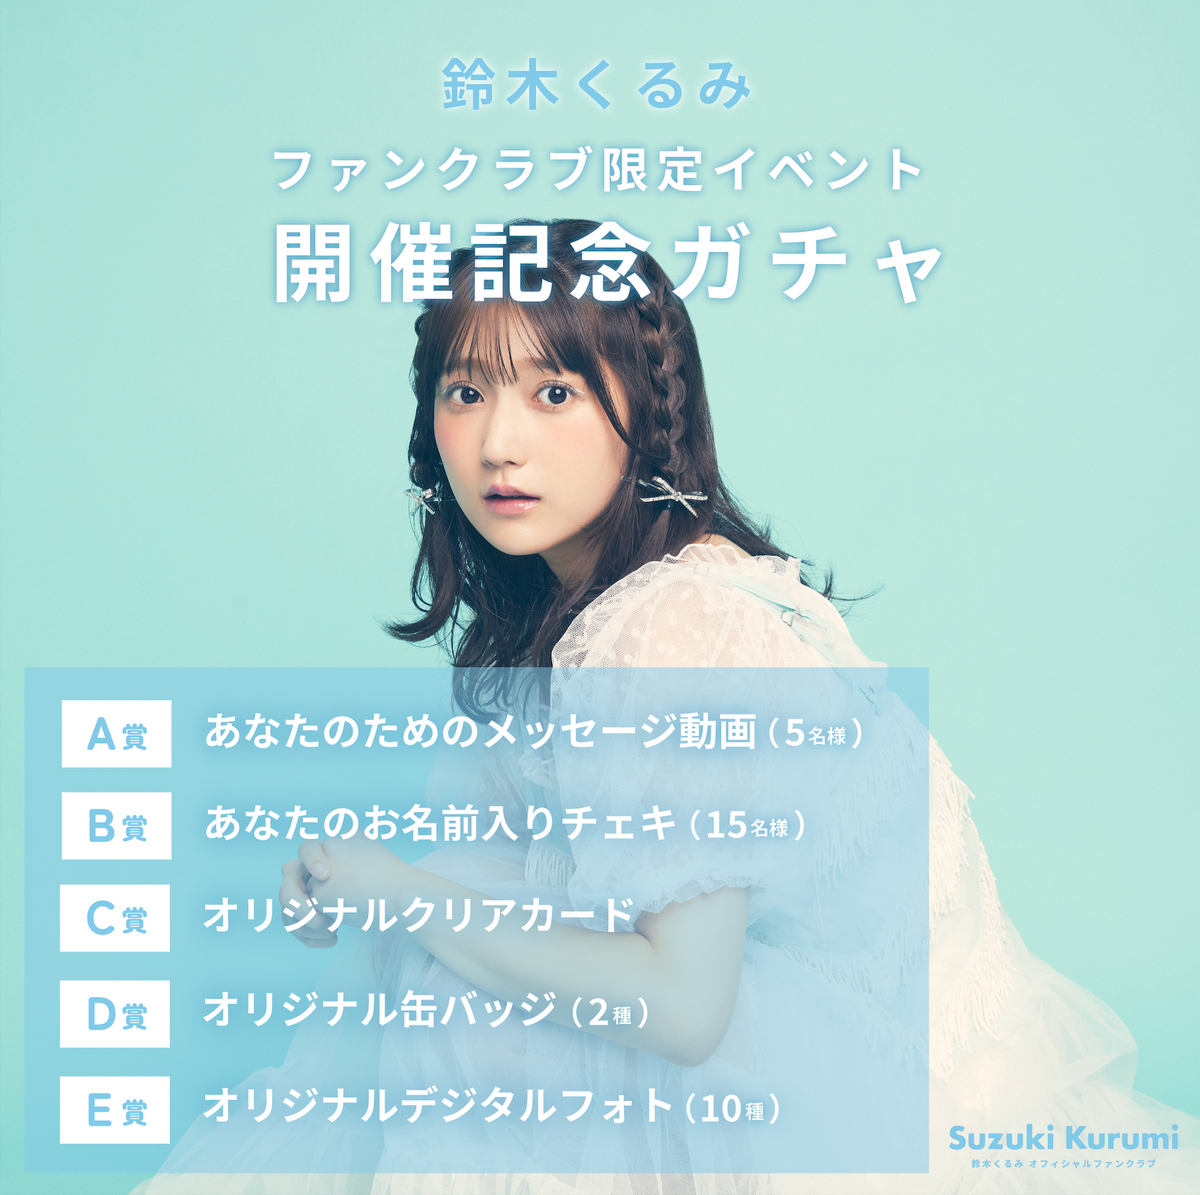 AKB48 Kurumi Suzuki Online Gacha